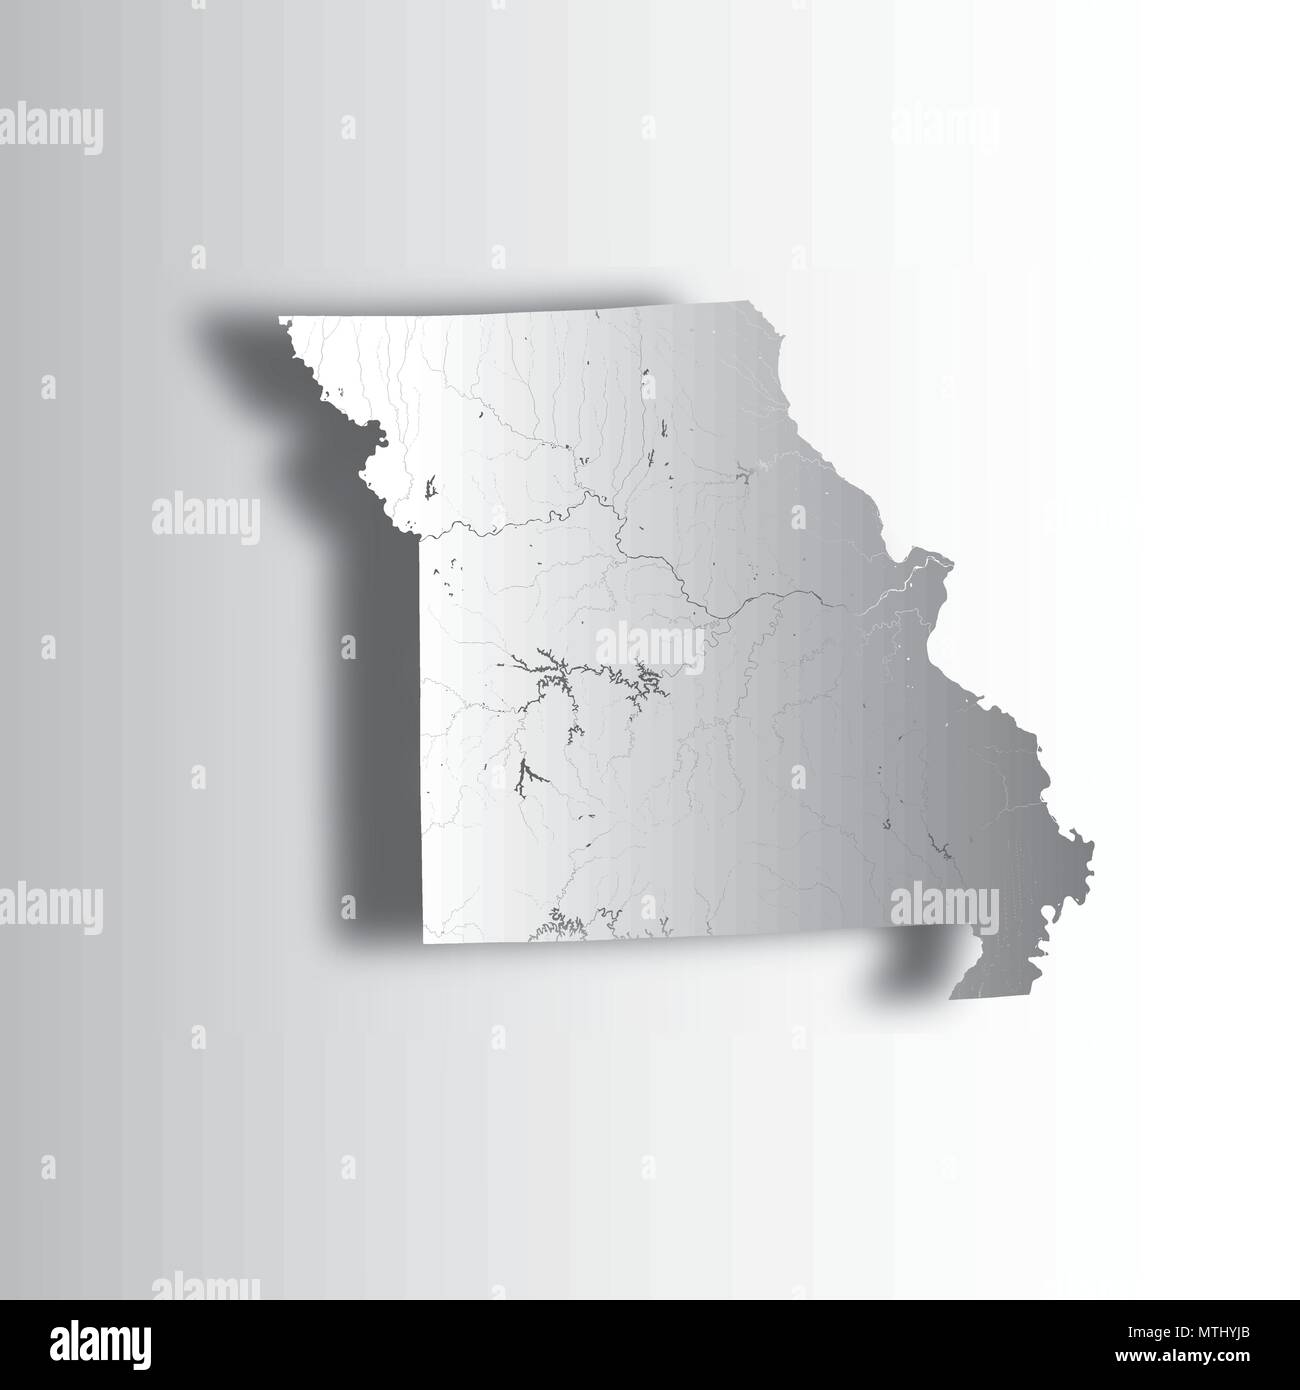 Les états américains - Carte du Missouri avec effet coupe papier. Fait main. Les rivières et lacs sont indiqués. Merci de regarder mes autres images de documents cartographiques - série e Illustration de Vecteur